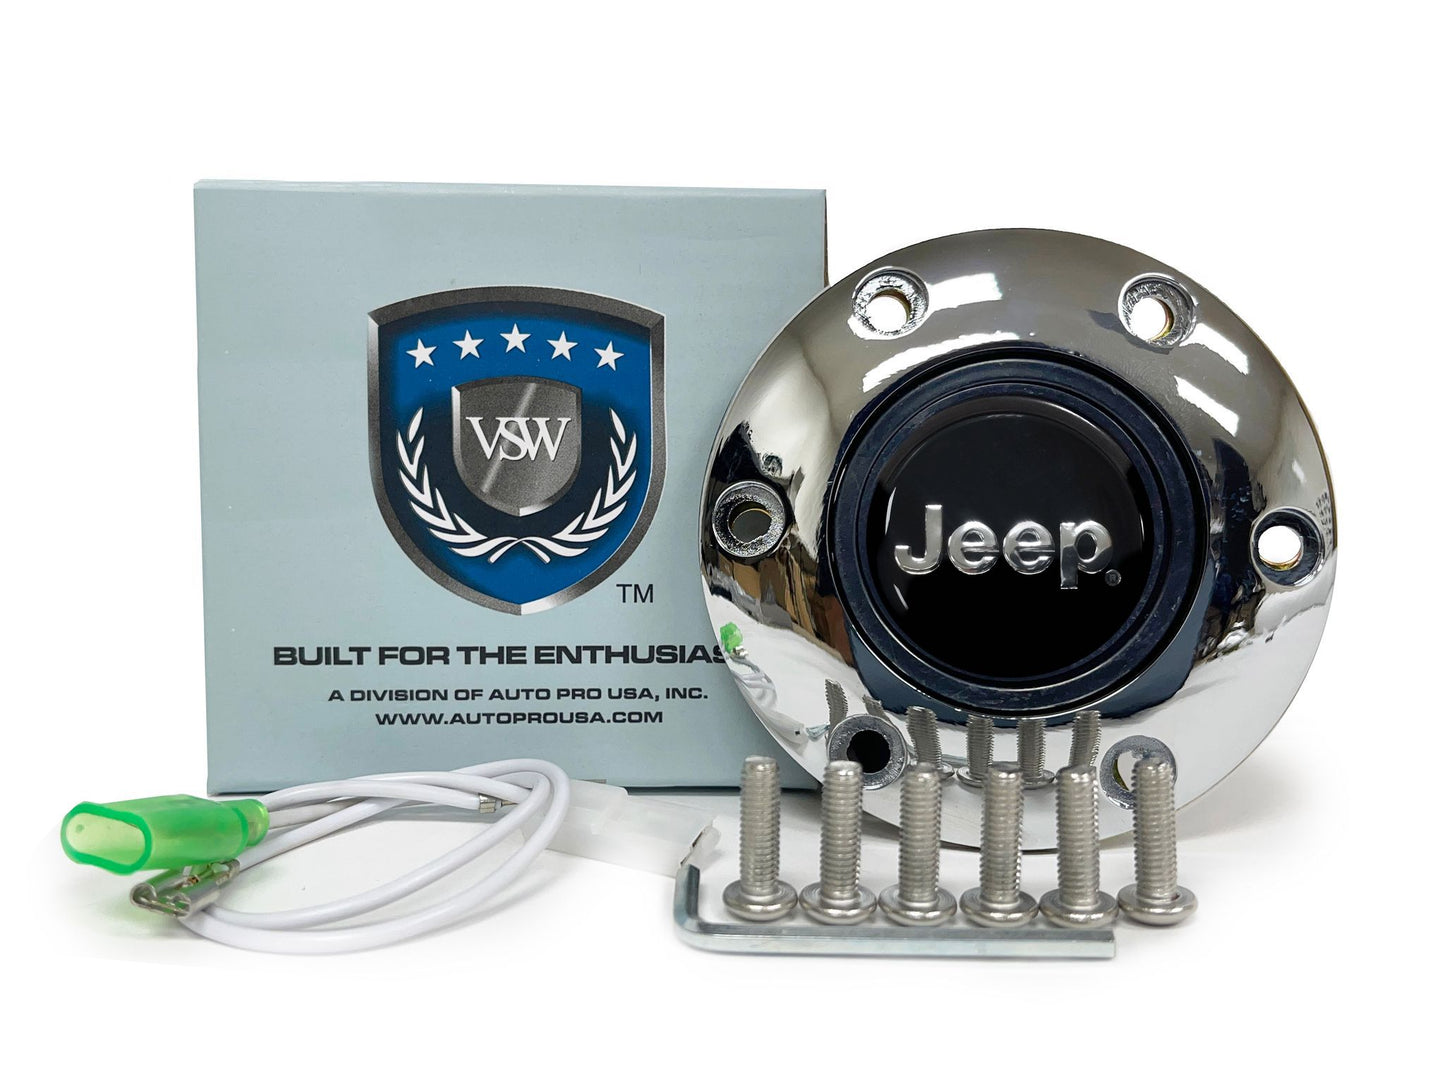 VSW S6 | Jeep Emblem | Chrome Horn Button | STE2002CHR